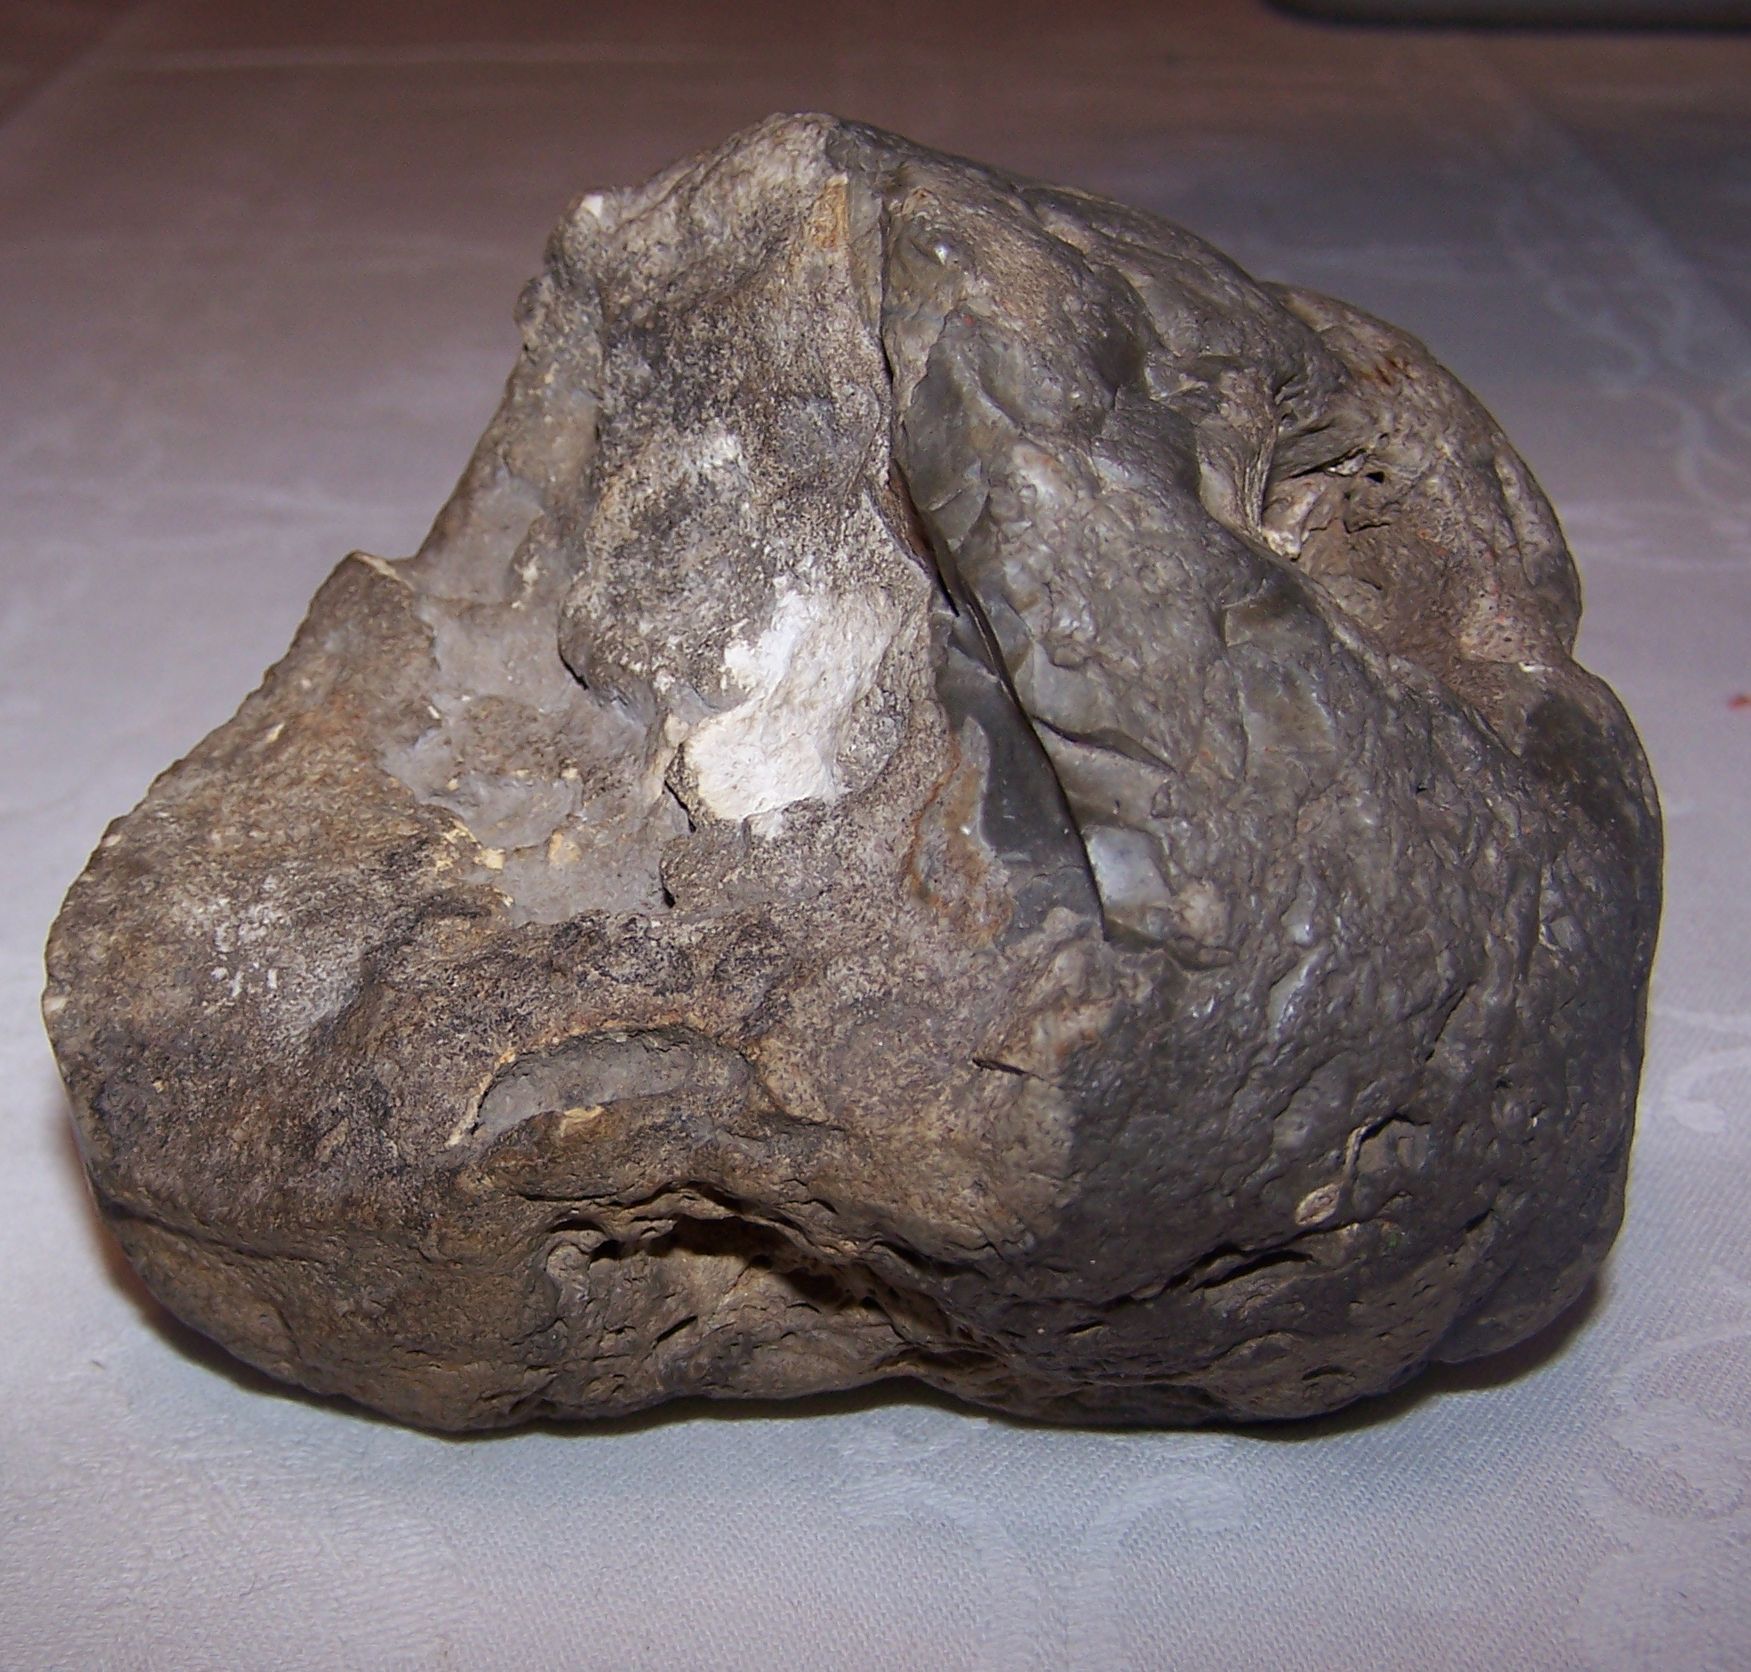 Der Meteorit wurde bei Ausschachtungsarbeiten in ~ 50cm Tiefe in gewachsenen Boden gefunden.
Er wog 900g, ist nicht magnetisch und hat eine Wichte von 2,2g/cm³ 
An dem Meteoriten sind Brandspuren unverkennbar. Daher lässt sich das fehlende Stück vorne zuordnen. Das Abbruchstück kann der Meteorit nur beim Aufschlag auf dem Erdboden verloren haben, denn die zu sehende Abbruchfläche zeigt keine Brandspuren, sondern nur eine Verwitterungskruste nach einem bestimmt jahrelangen Aufenthalt im Erdboden.